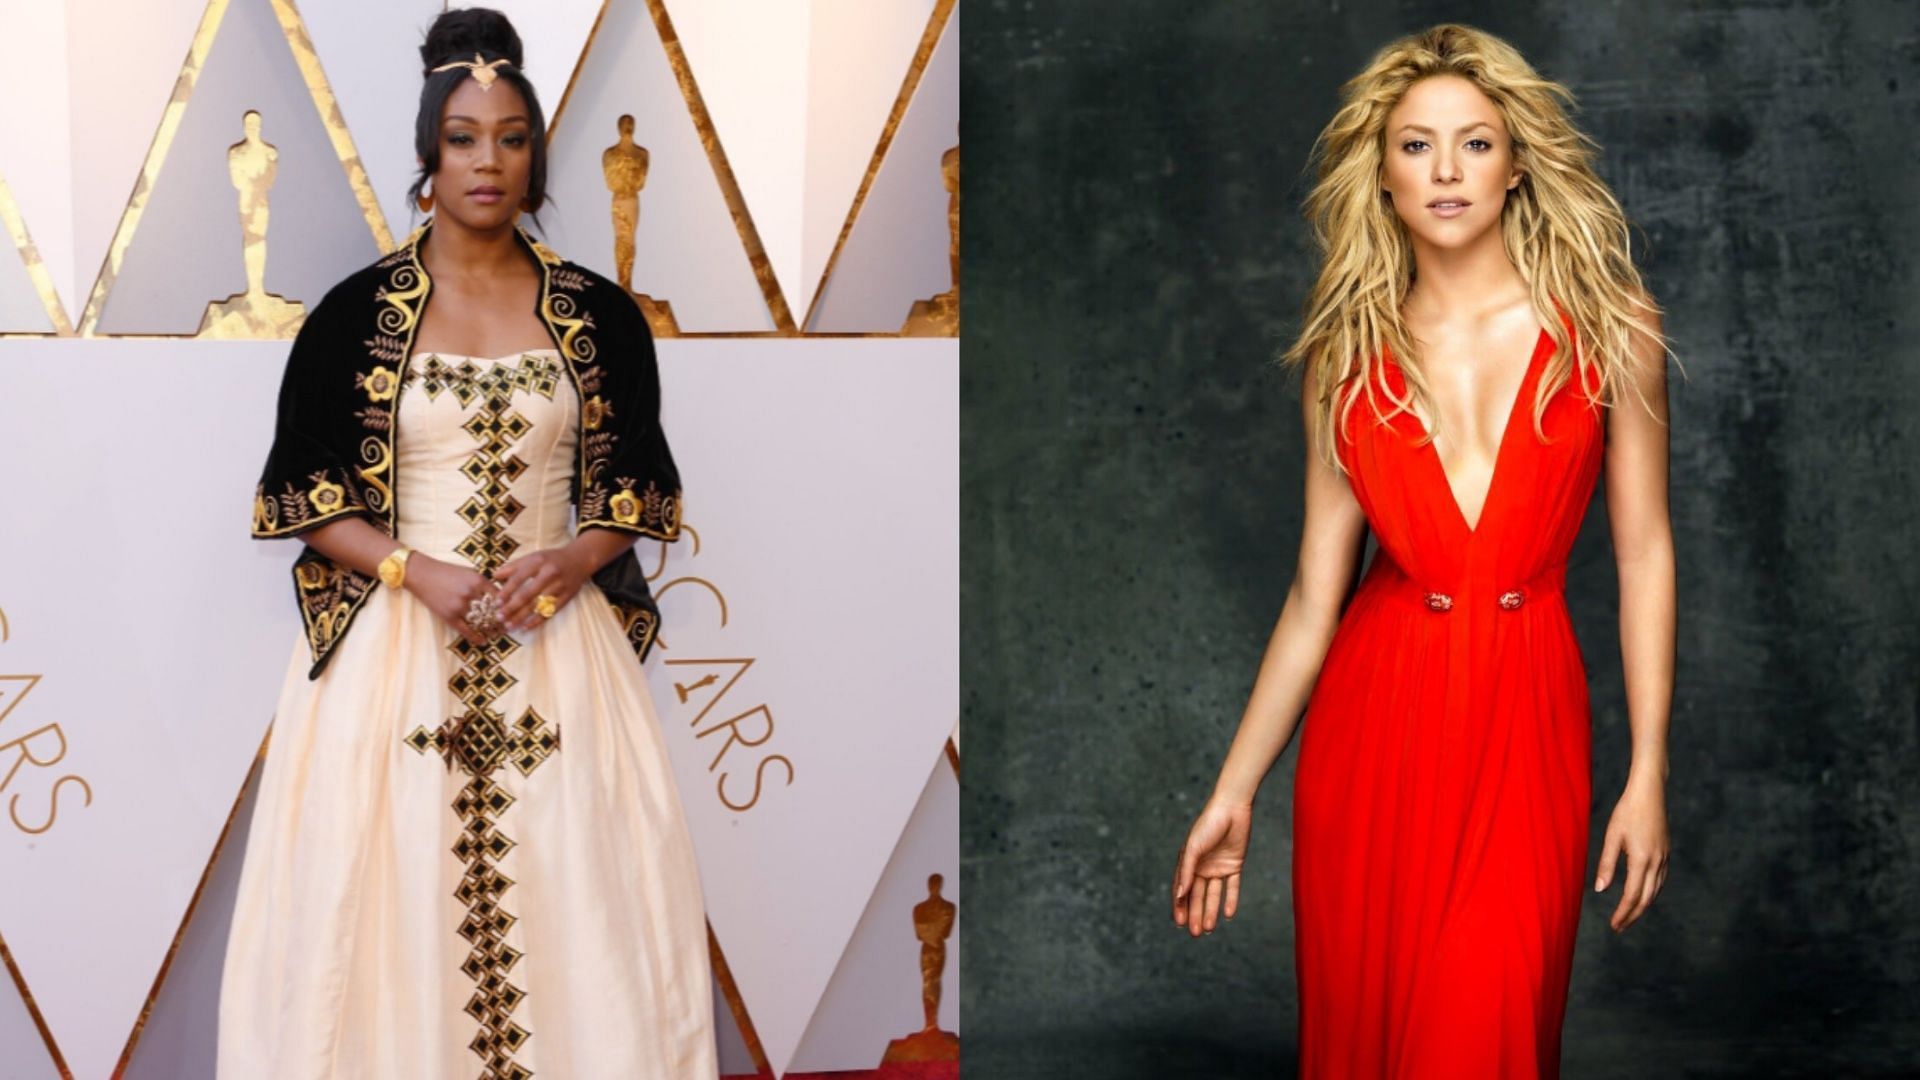 Tiffany Haddish faced online mockery for chasing Shakira at a recent award show. (Image via X/Tiffany Haddish/Shakira)